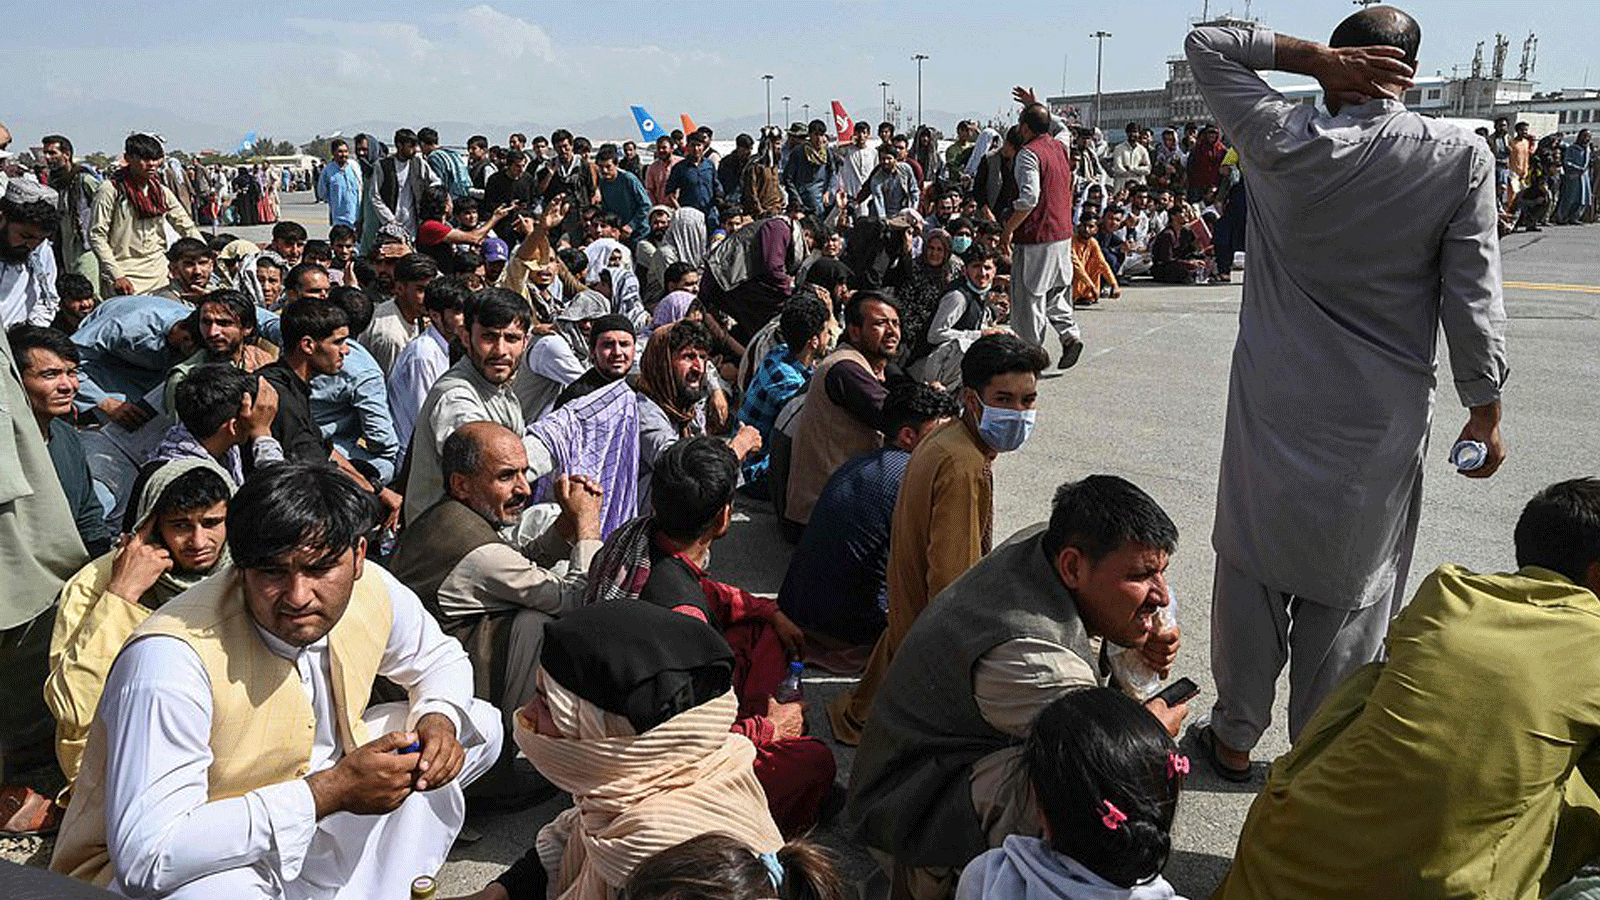 آلاف الأفغان يجلسون في انتظار مغادرة مطار كابول